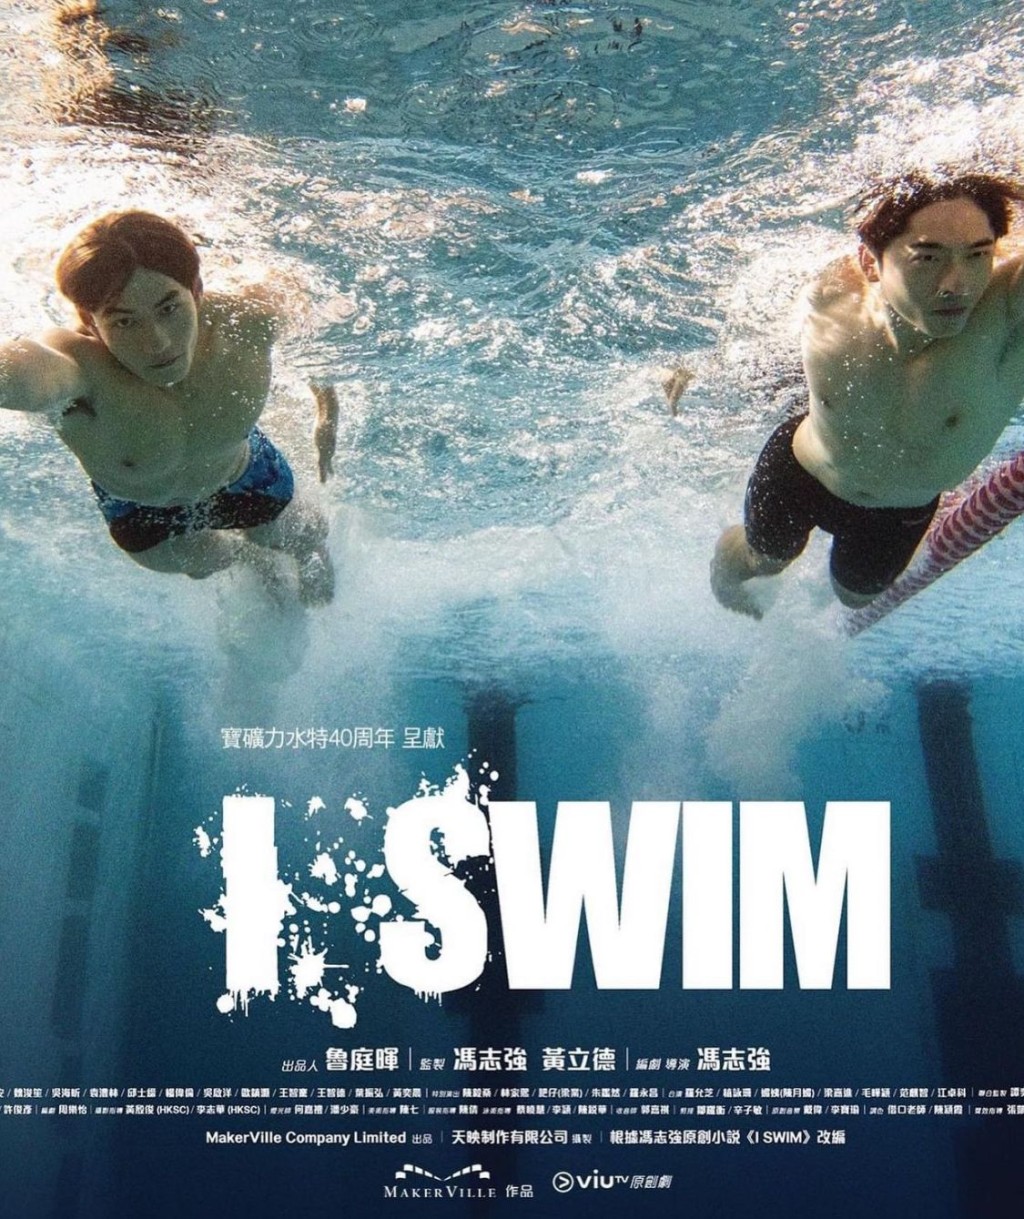 劇中兩位主角Edan和Jeffery喺泳池中鬥泳。